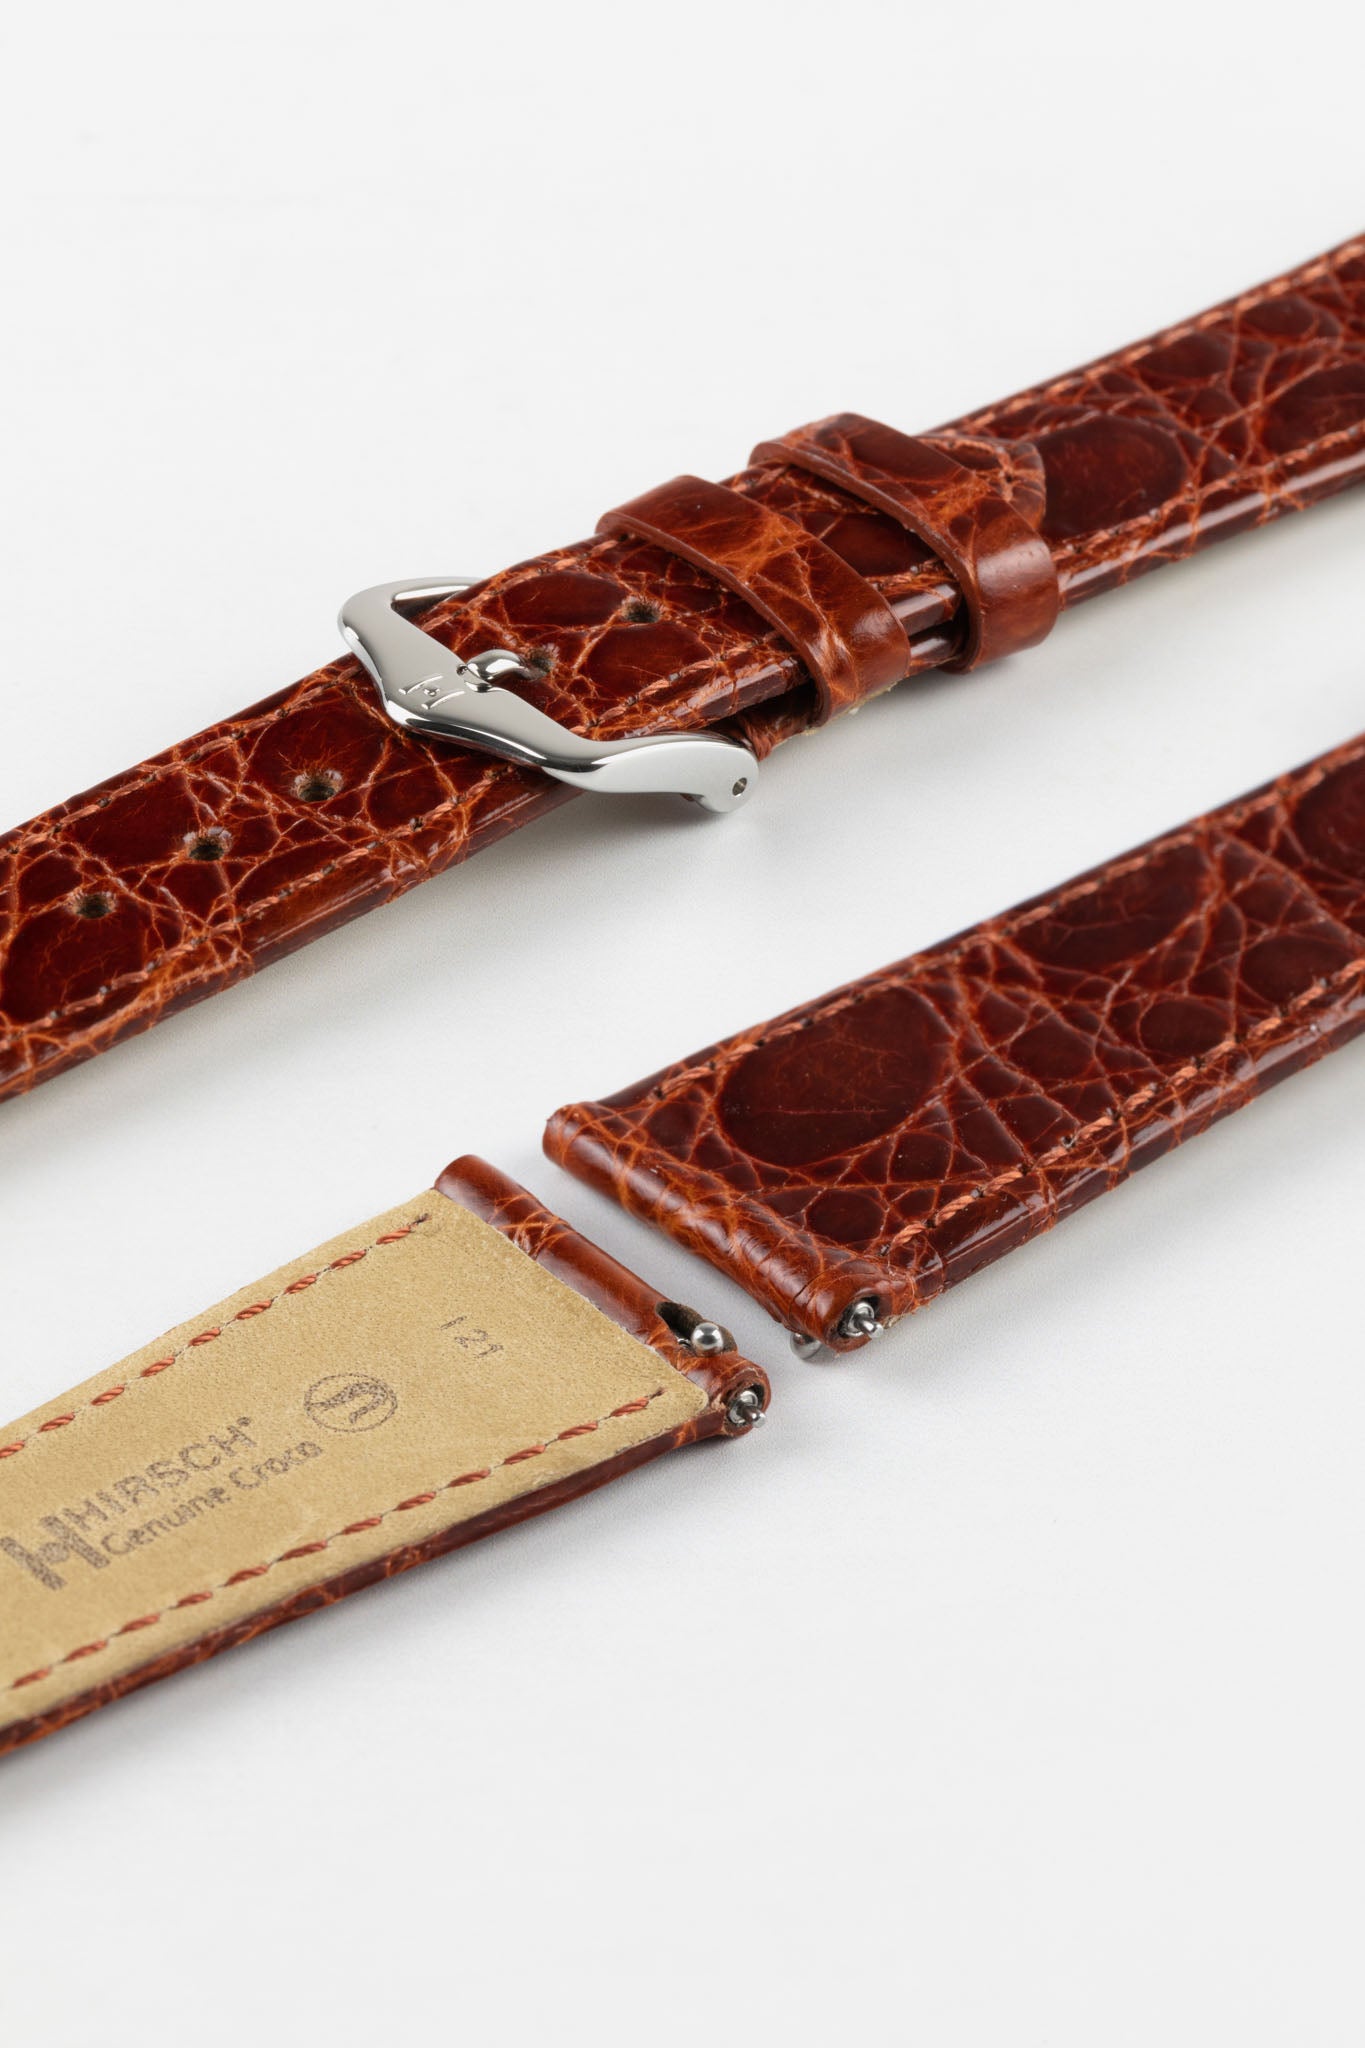 Genuine Crocodile Watch Strap, Hirsch